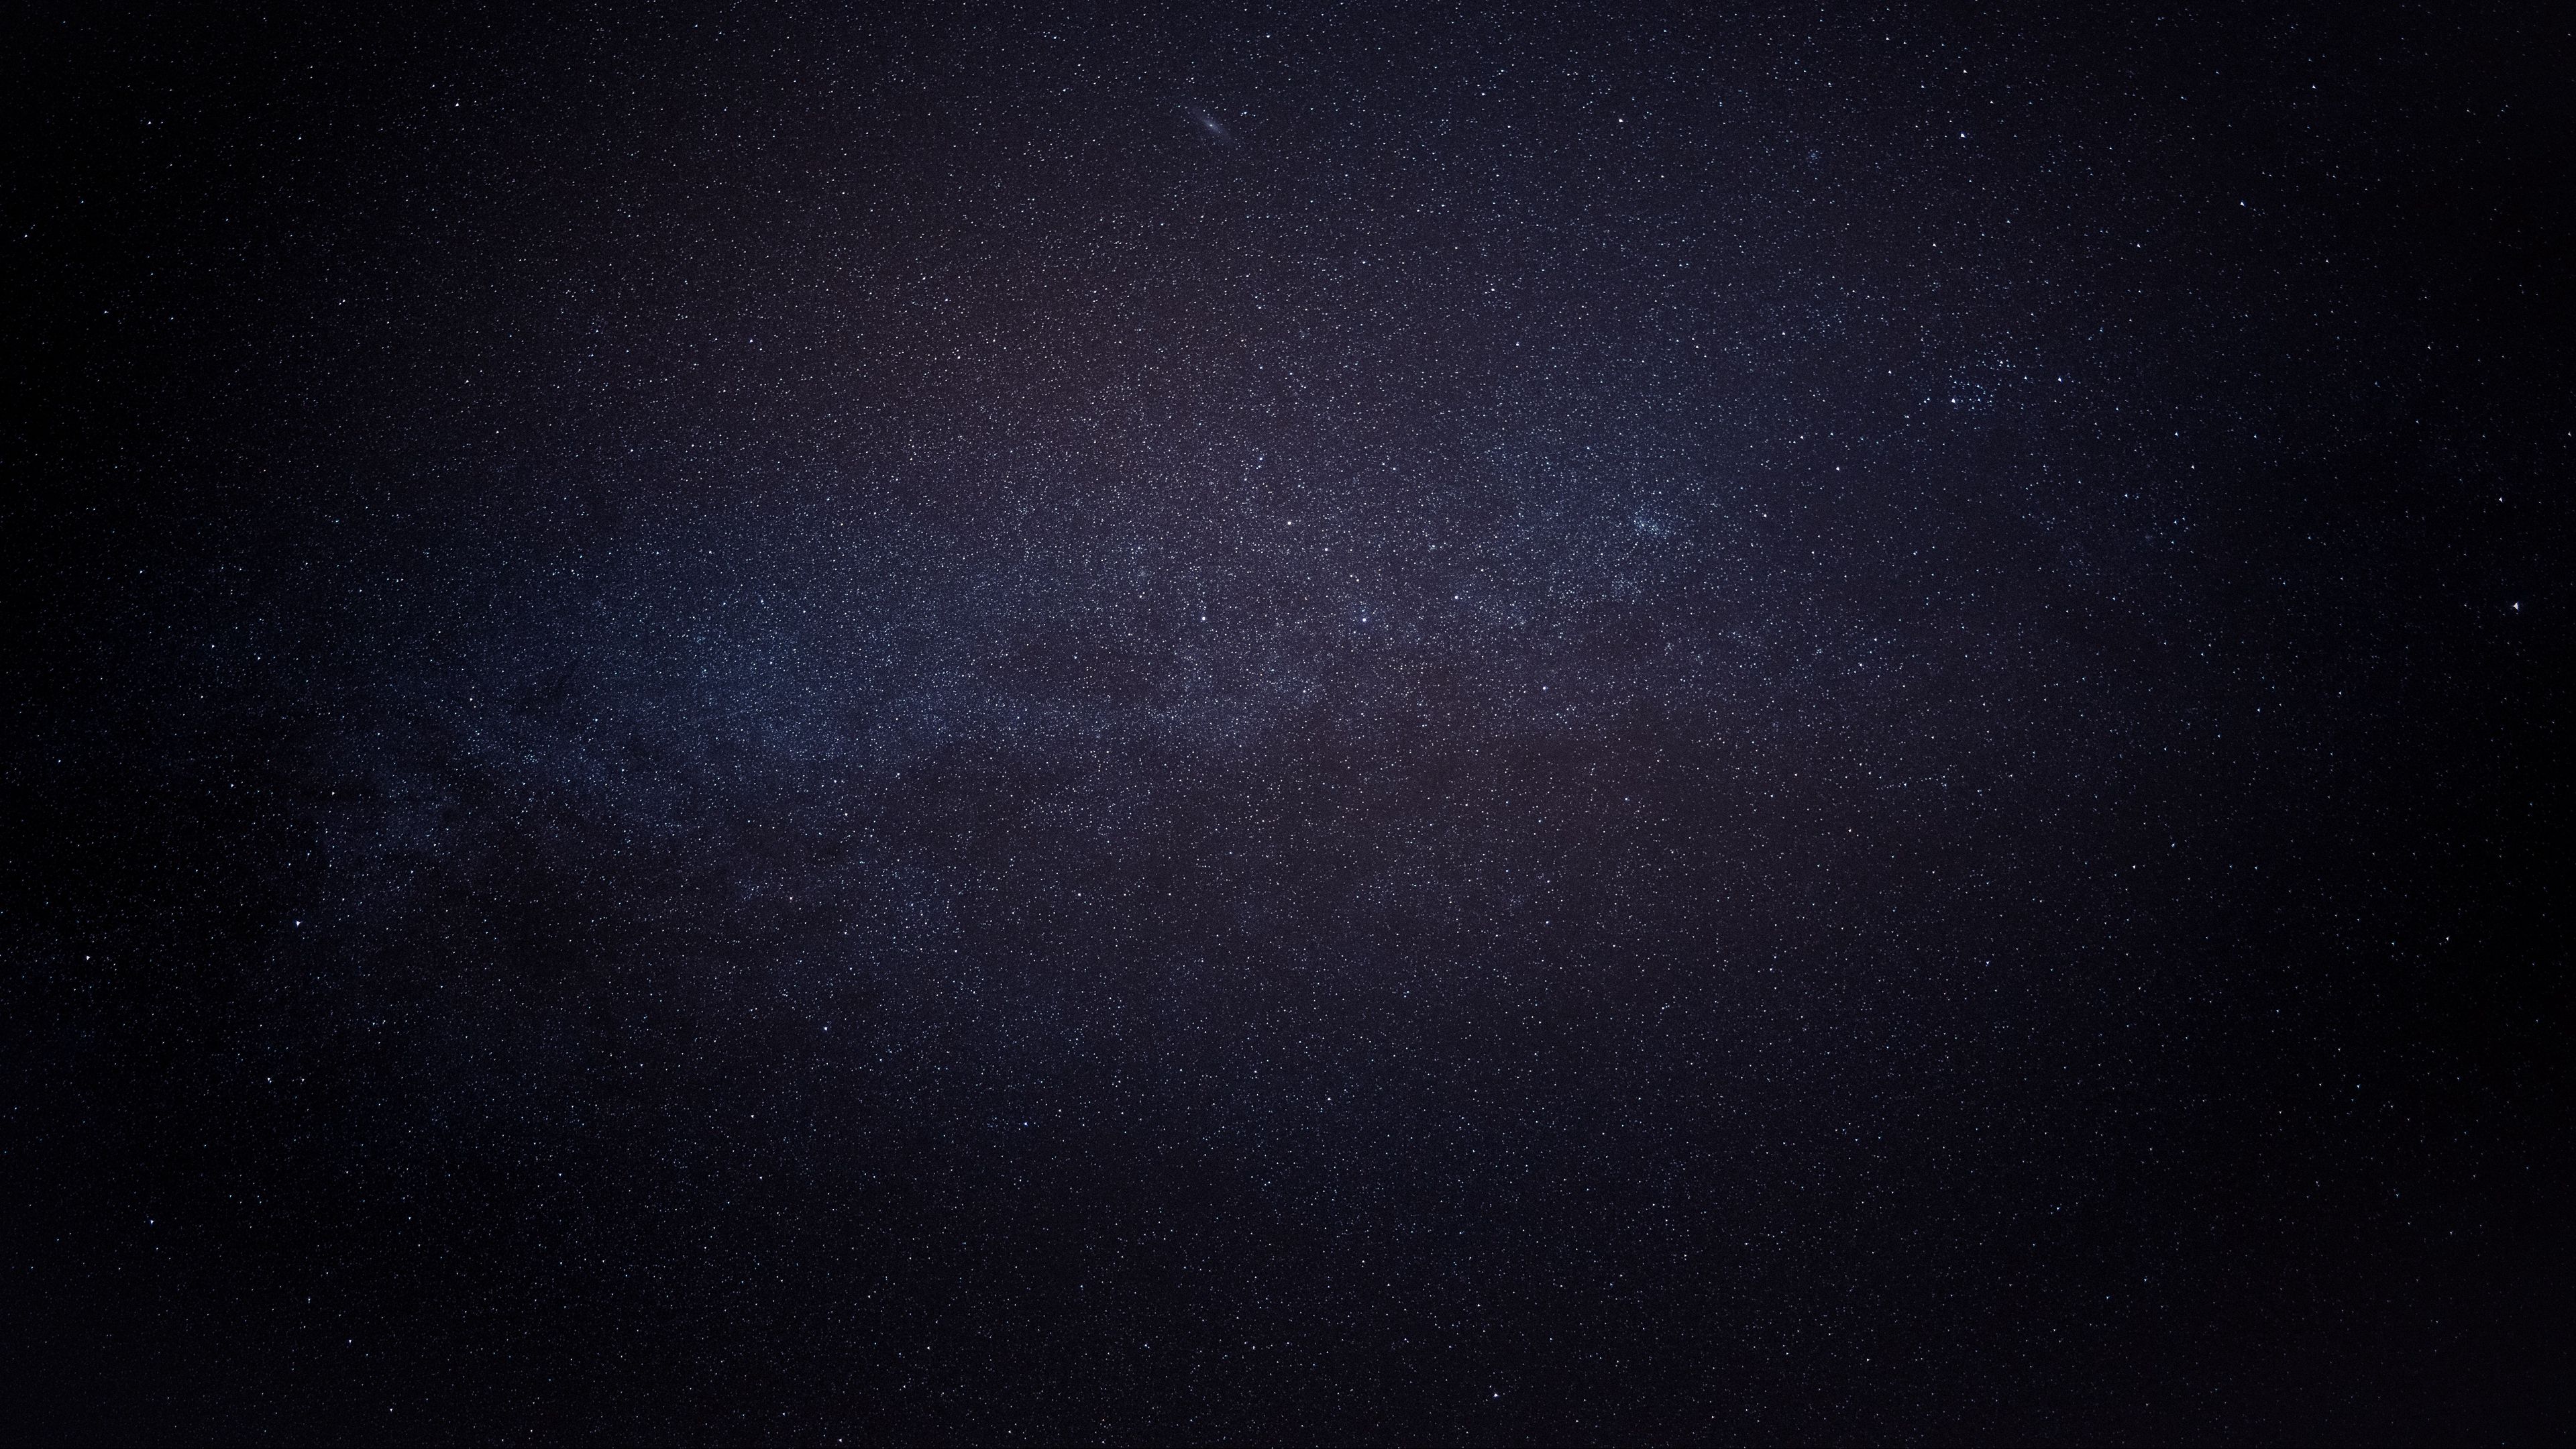 Hình nền đen vũ trụ 4k: Khám phá bầu trời đầy bí ẩn với hình nền đen vũ trụ 4k chất lượng cao. Choáng ngợp trước những hình ảnh tuyệt đẹp của các hành tinh, sao chổi và thiên thể khác trên nền đen lấp lánh đầy mê hoặc. Sẽ là một trải nghiệm tuyệt vời cho những ai yêu thích không gian.